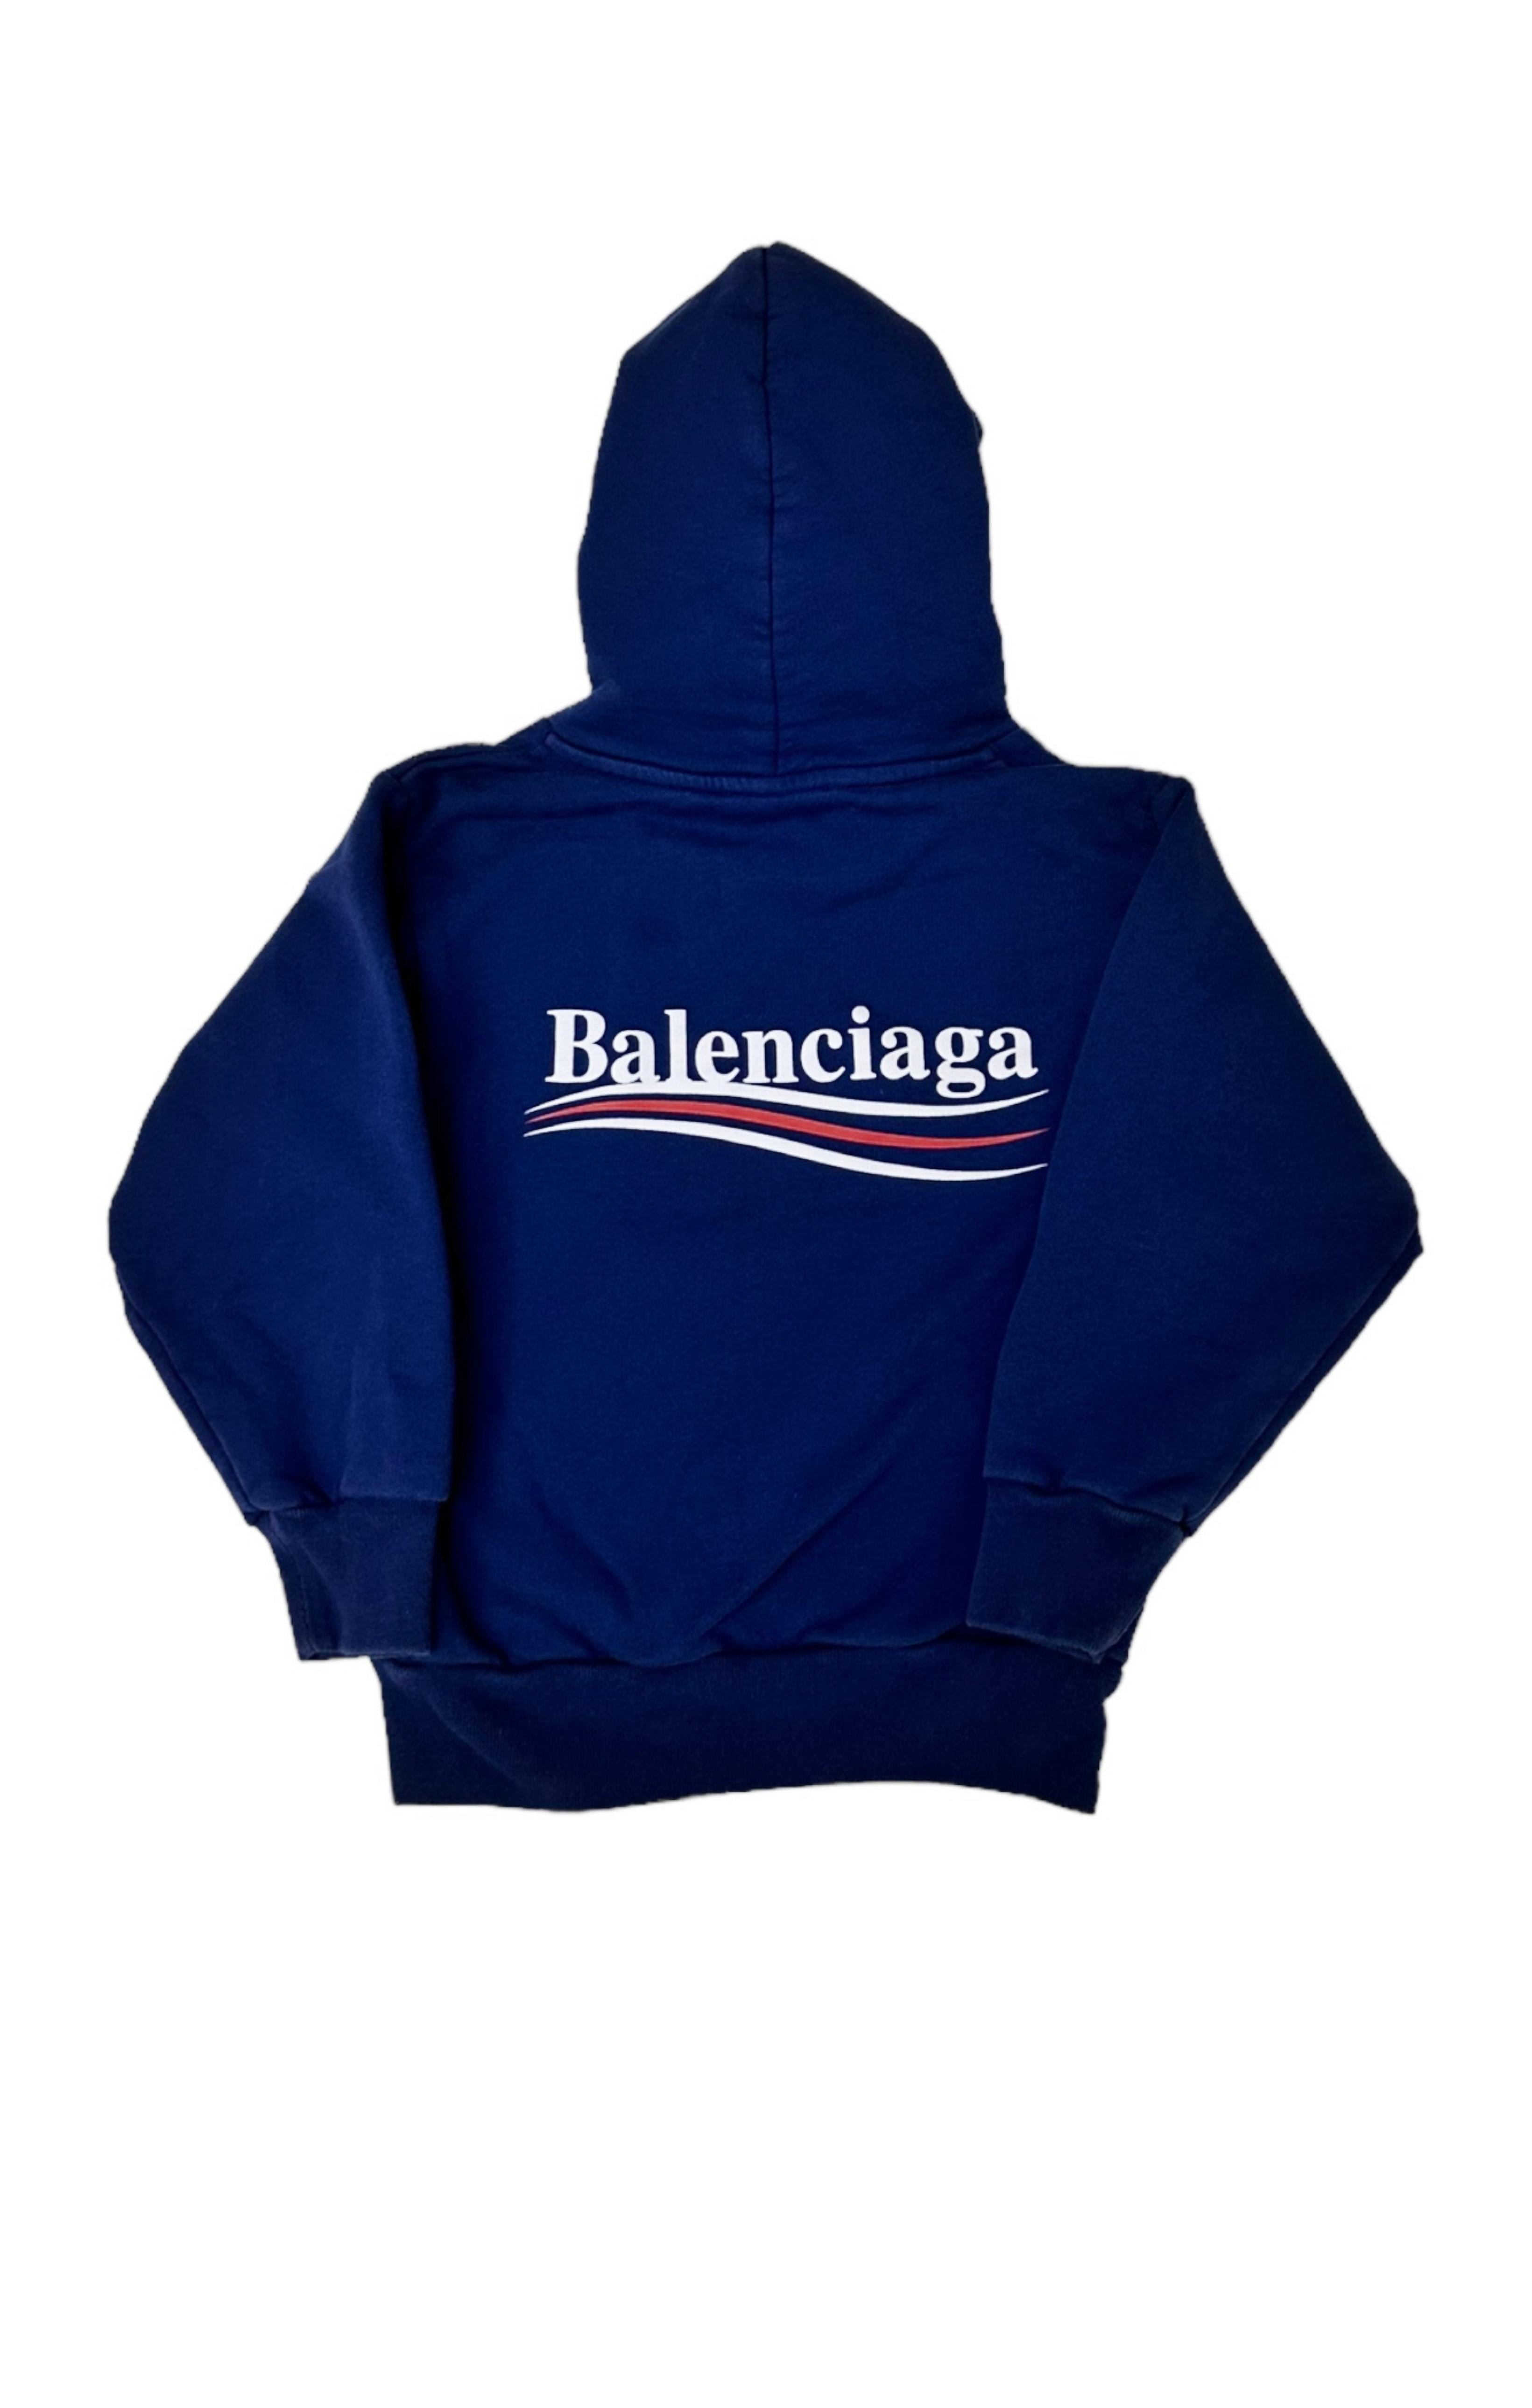 BALENCIAGA Sweatshirt Size: 4 Years